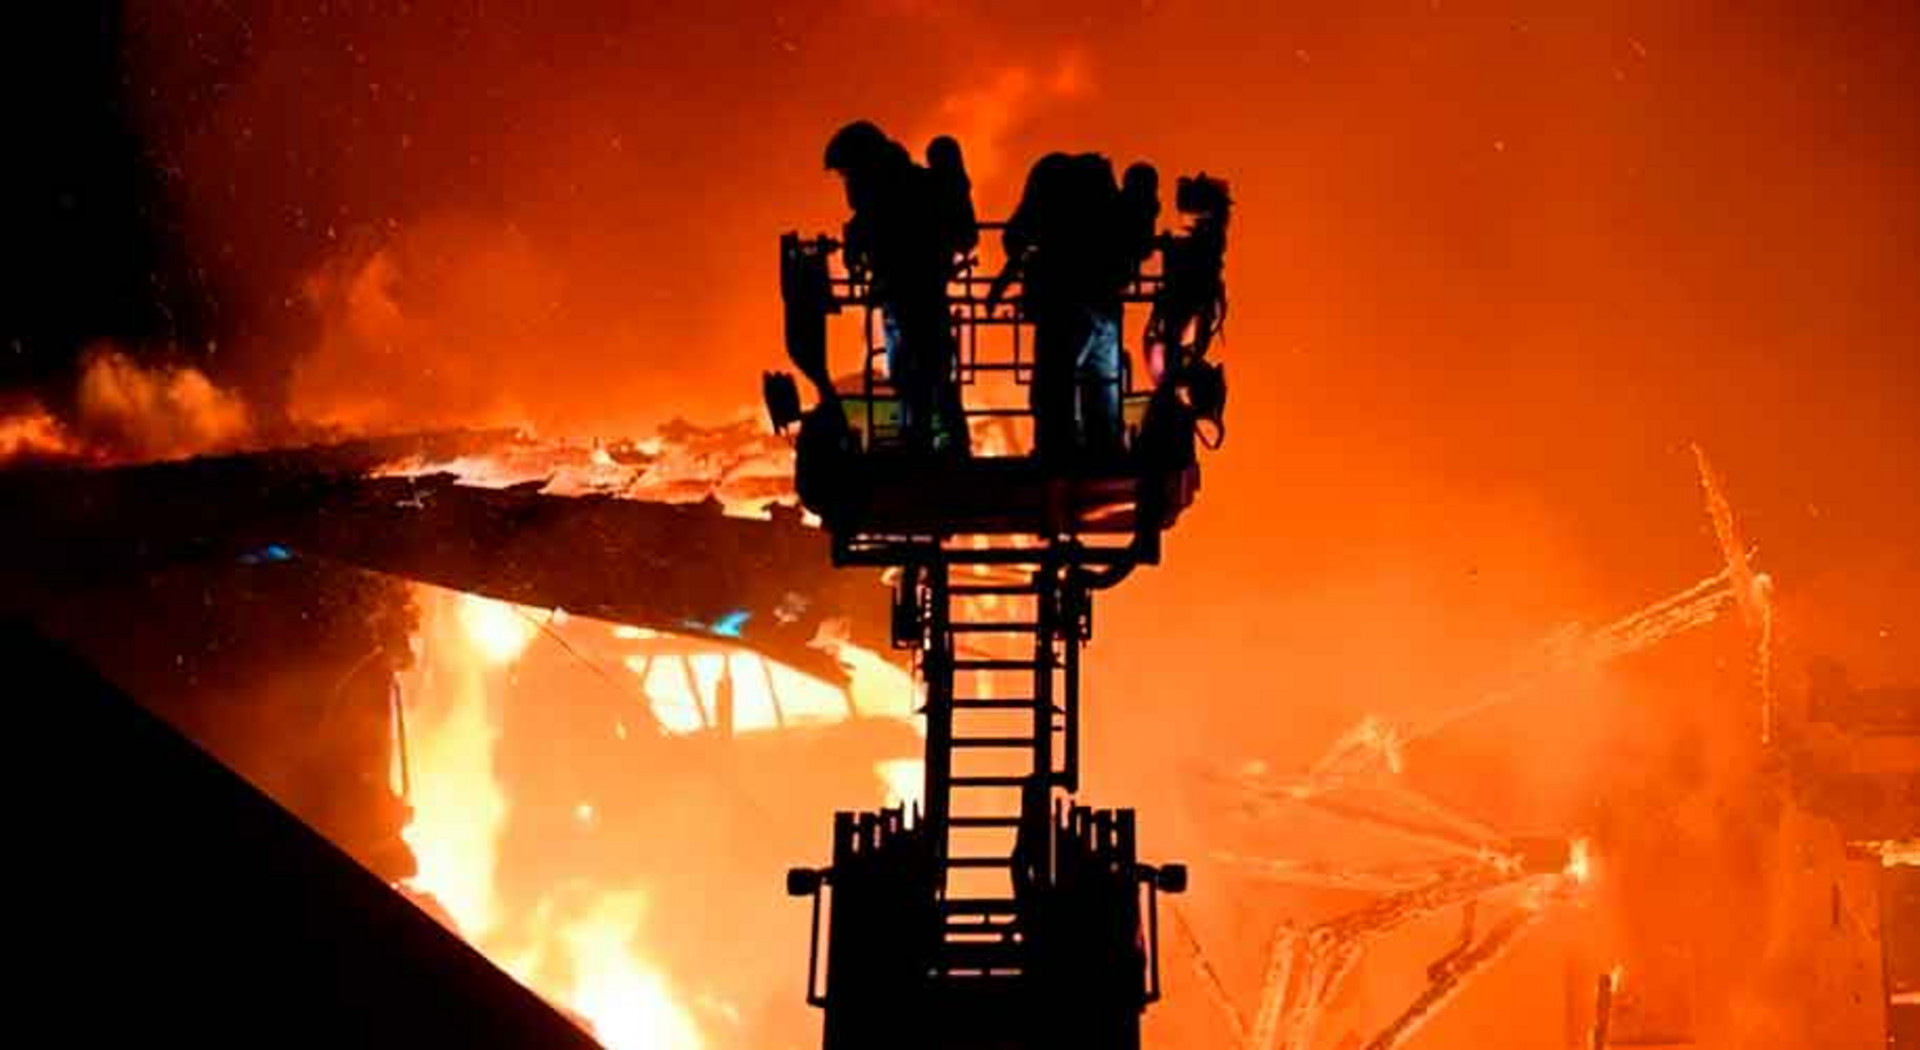 Mehrere Feuerwehrleute bekämpfen das Feuer von der Drehleiter aus